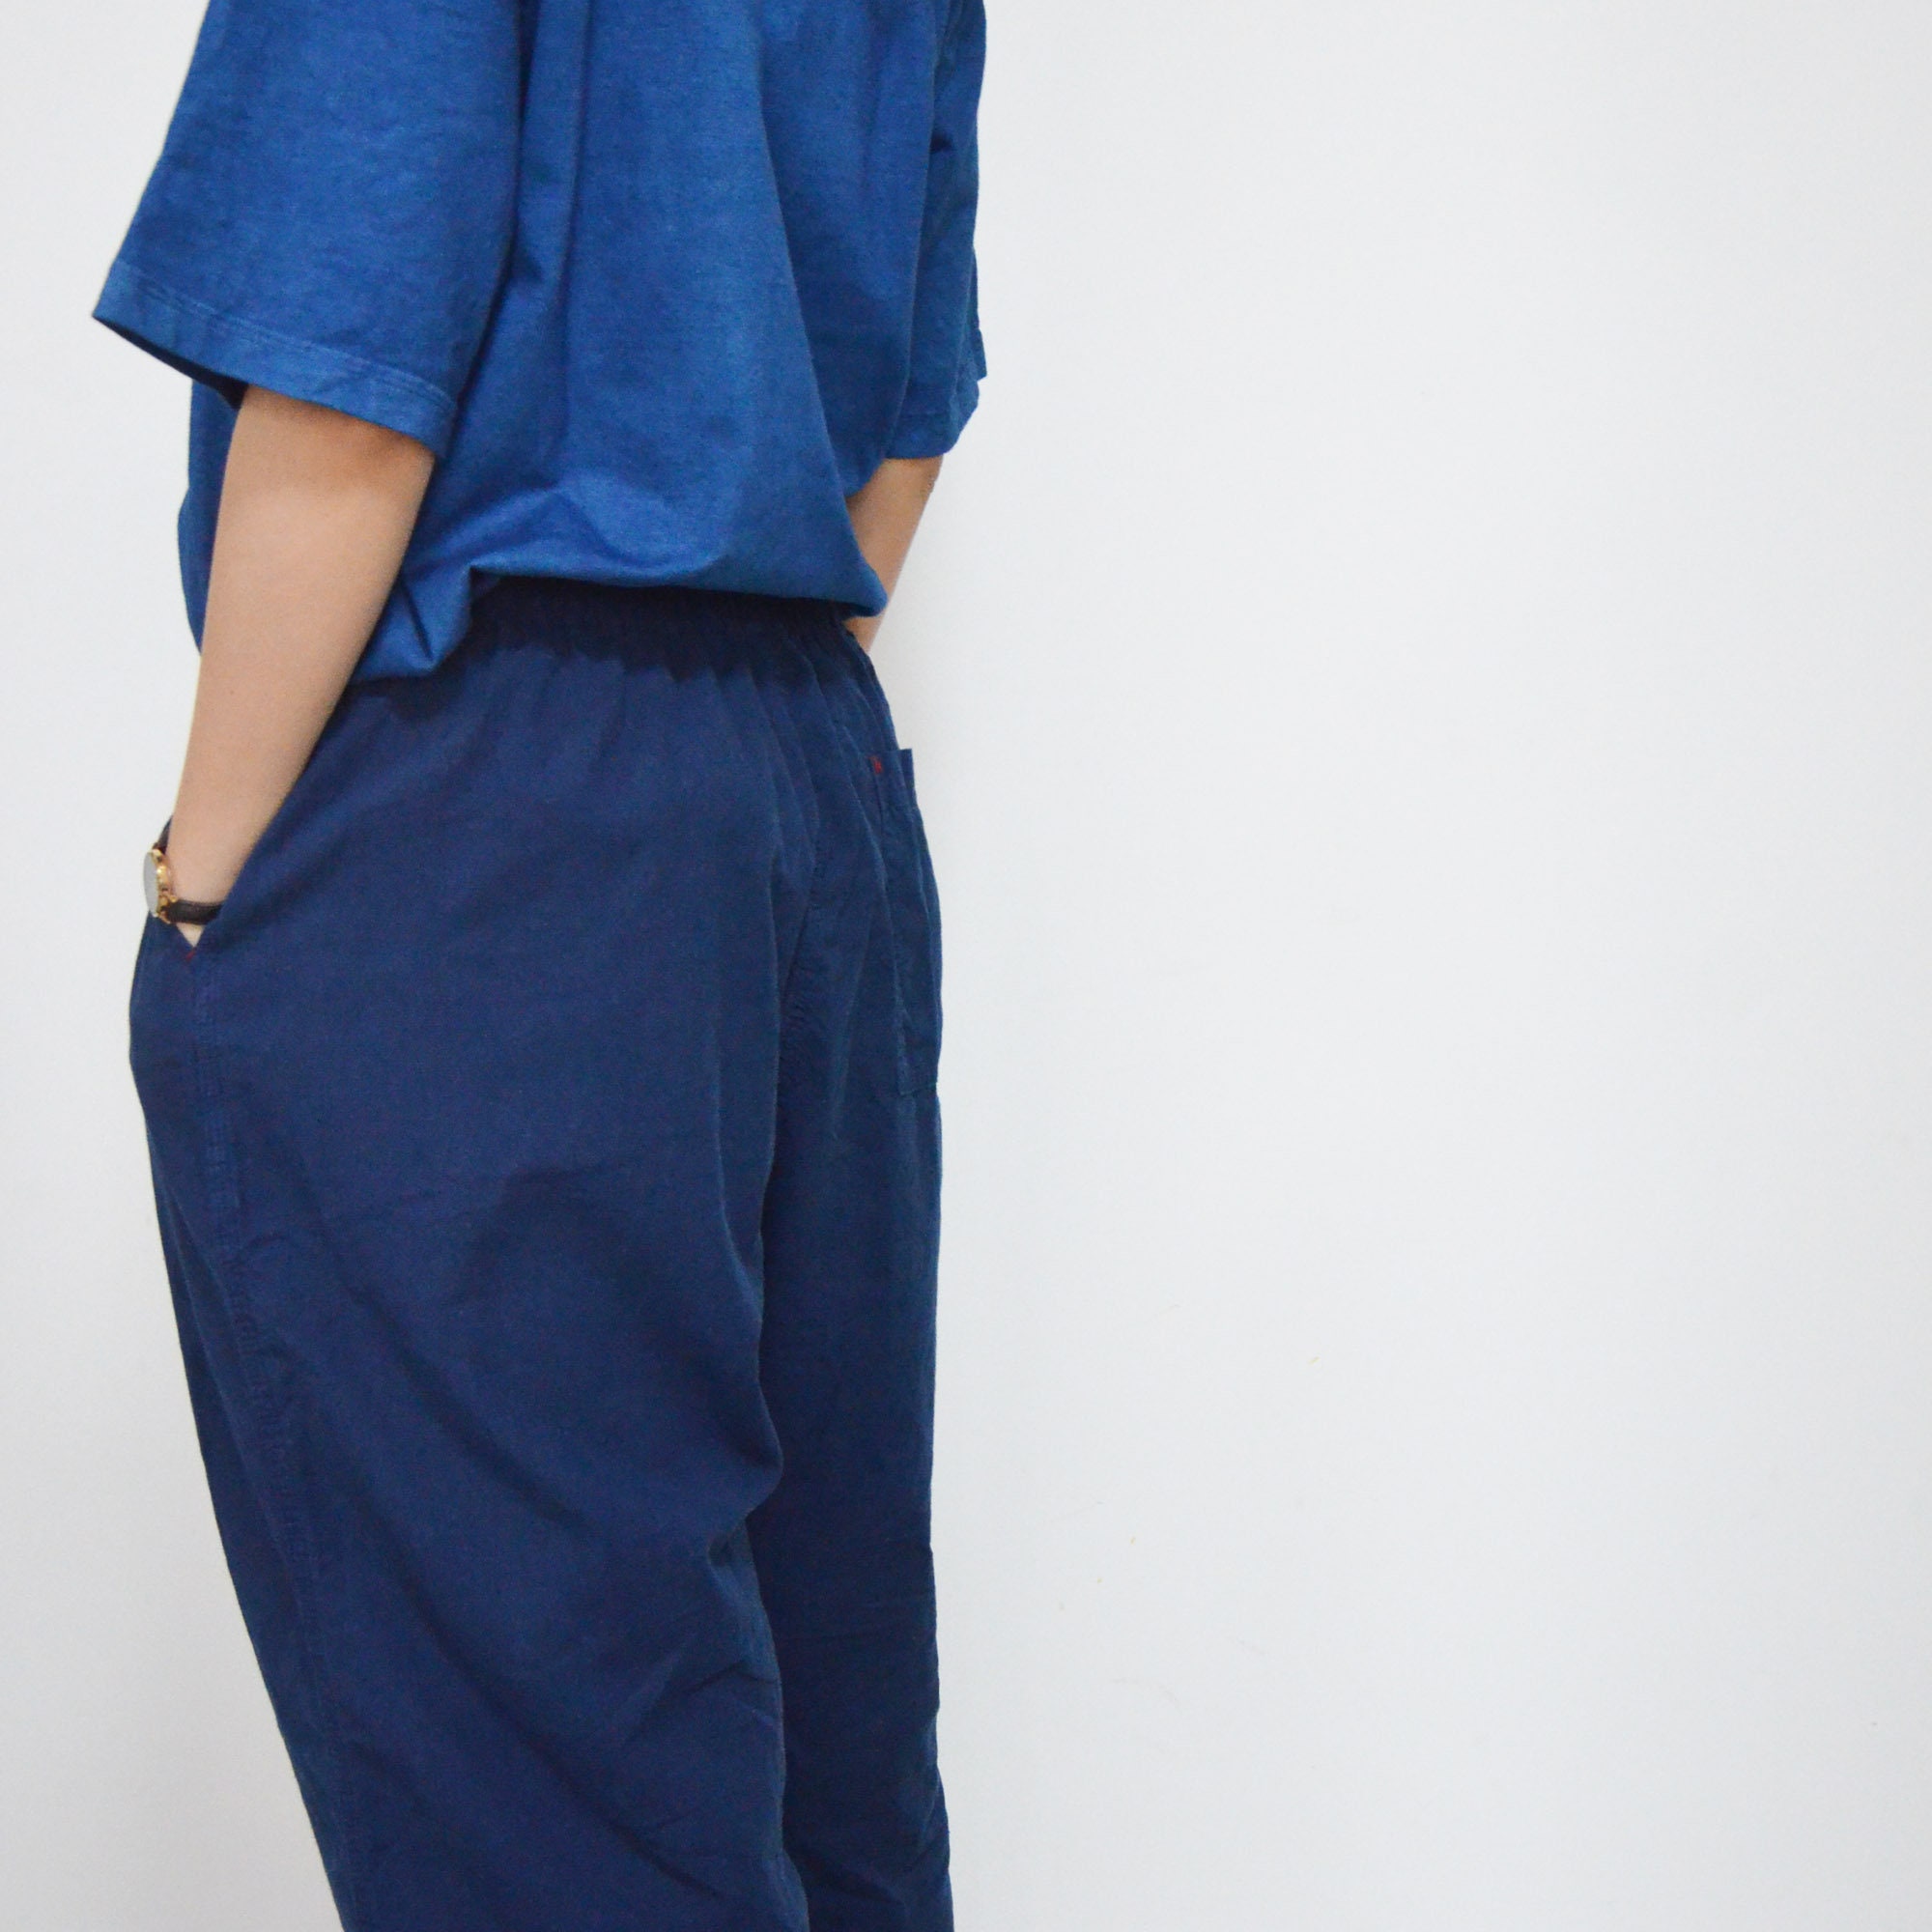 Indigo Blue Pants Dye Trousers Natural Plant Dye Cotton Pants - Etsy UK